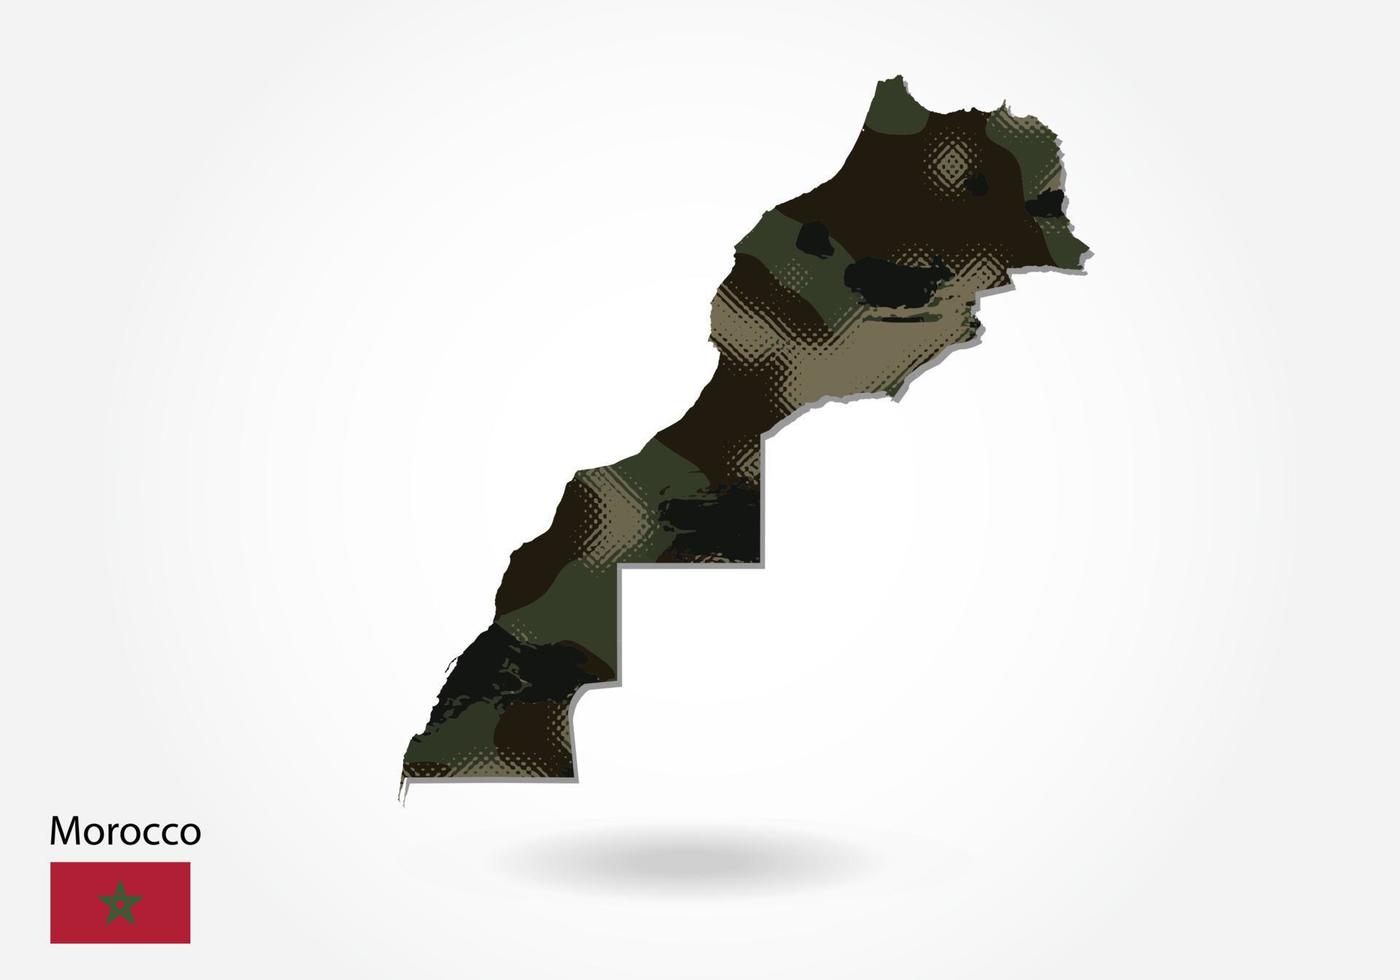 carte du maroc avec motif camouflage, forêt - texture verte sur la carte. concept militaire pour l'armée, le soldat et la guerre. armoiries, drapeau. vecteur